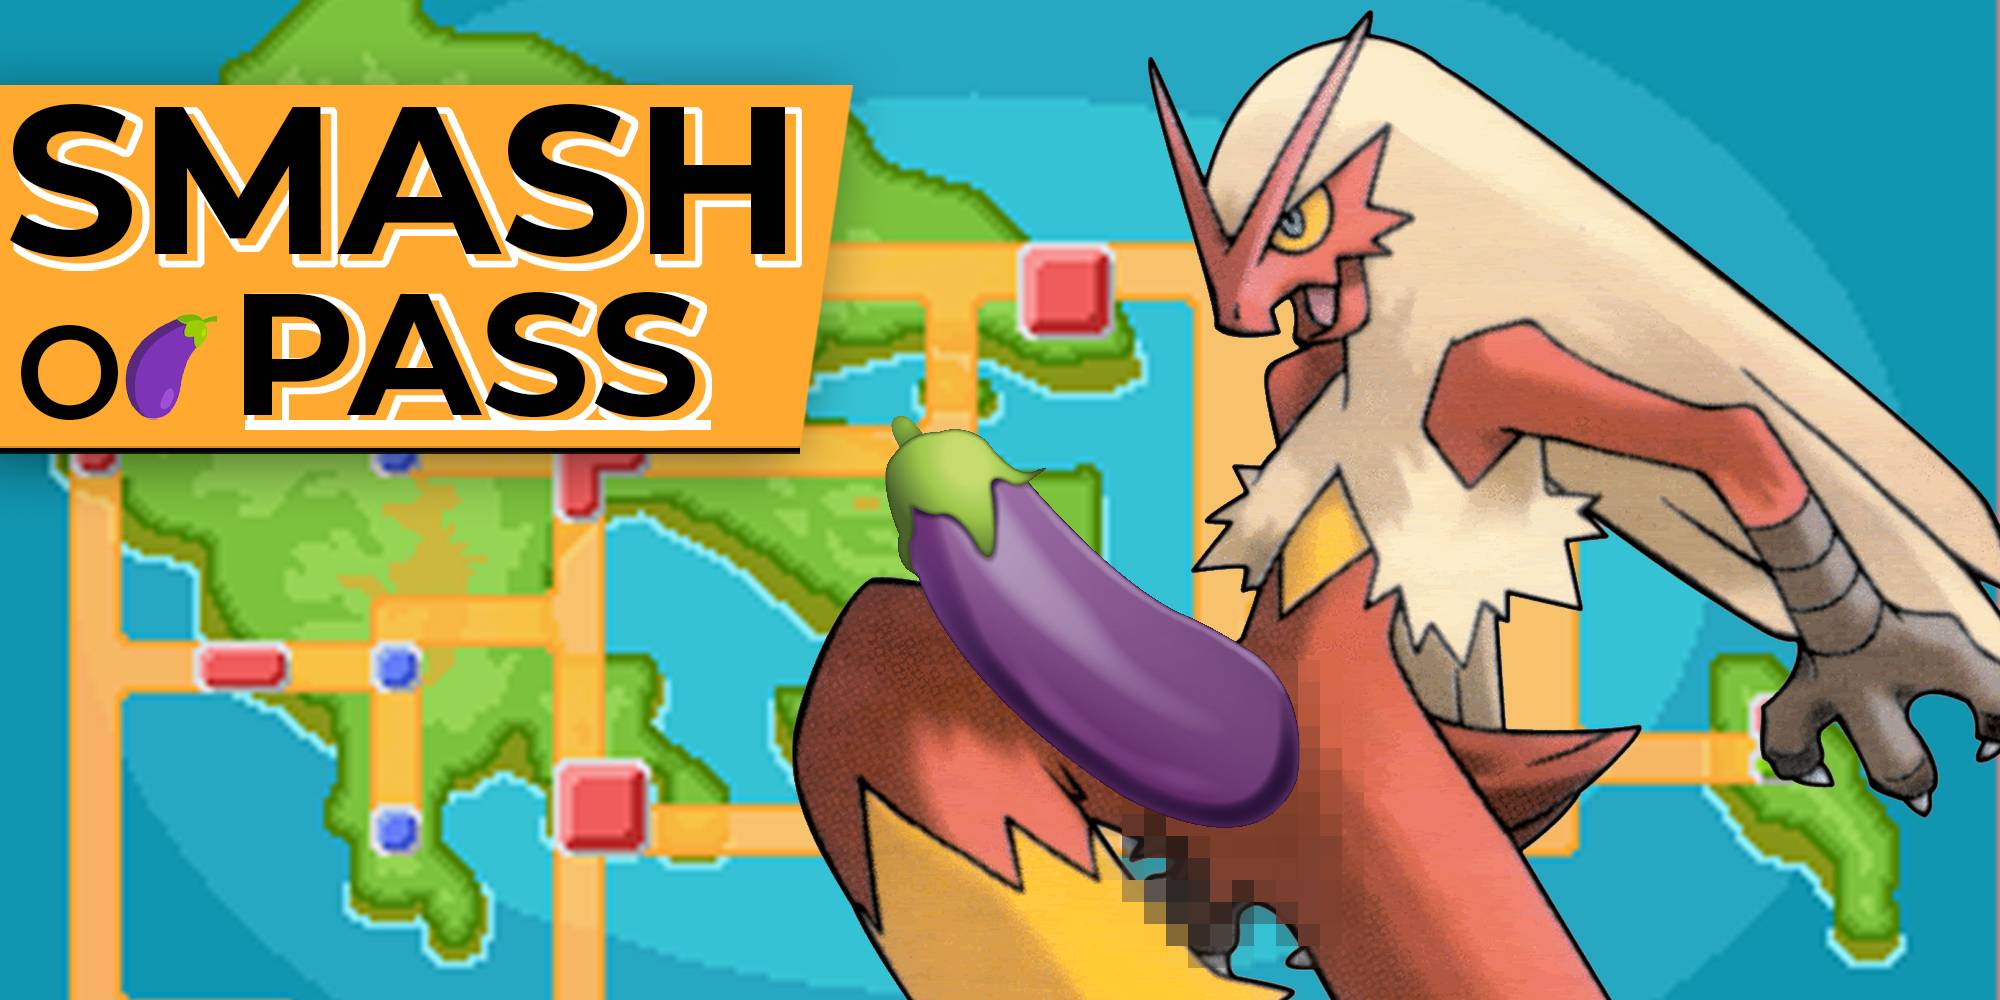 Smash or pass pokémon